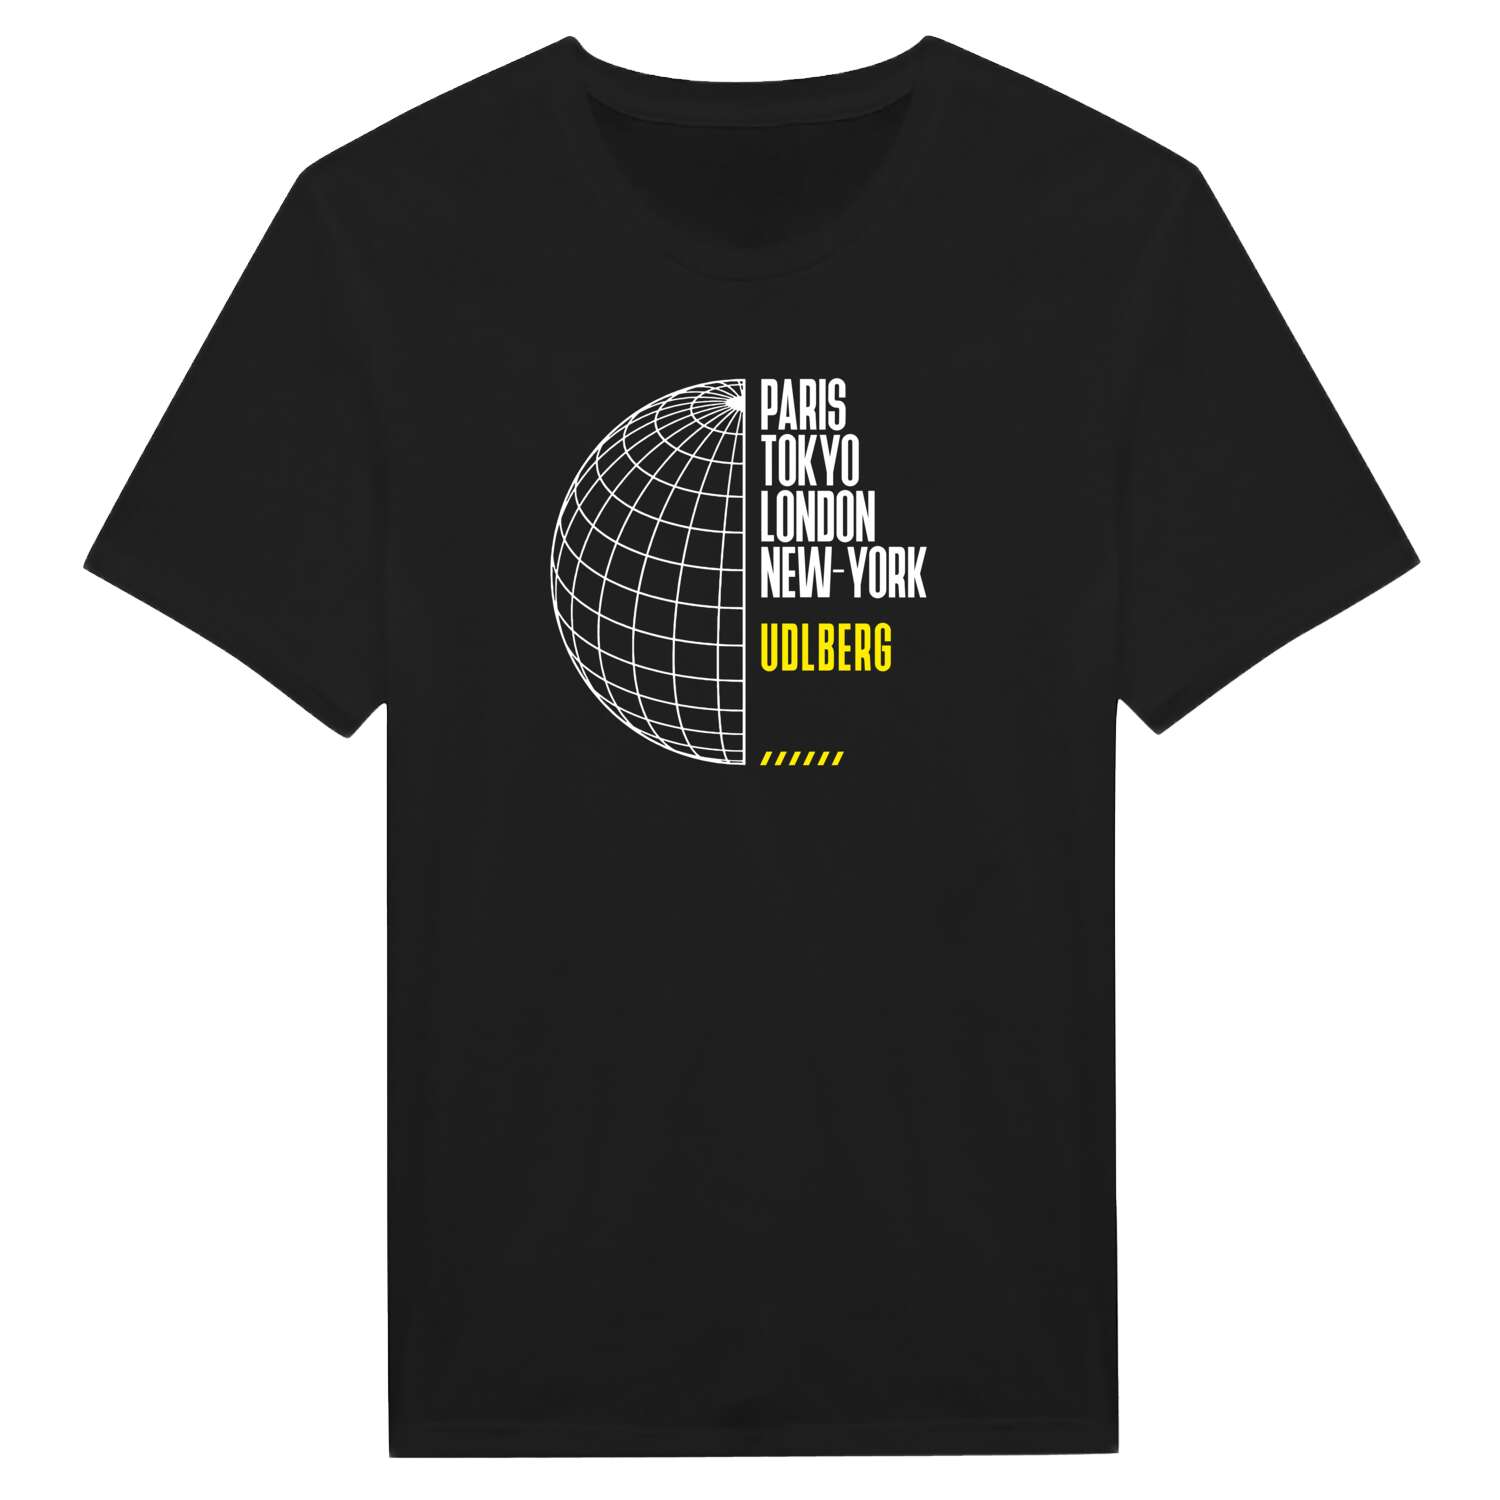 Udlberg T-Shirt »Paris Tokyo London«